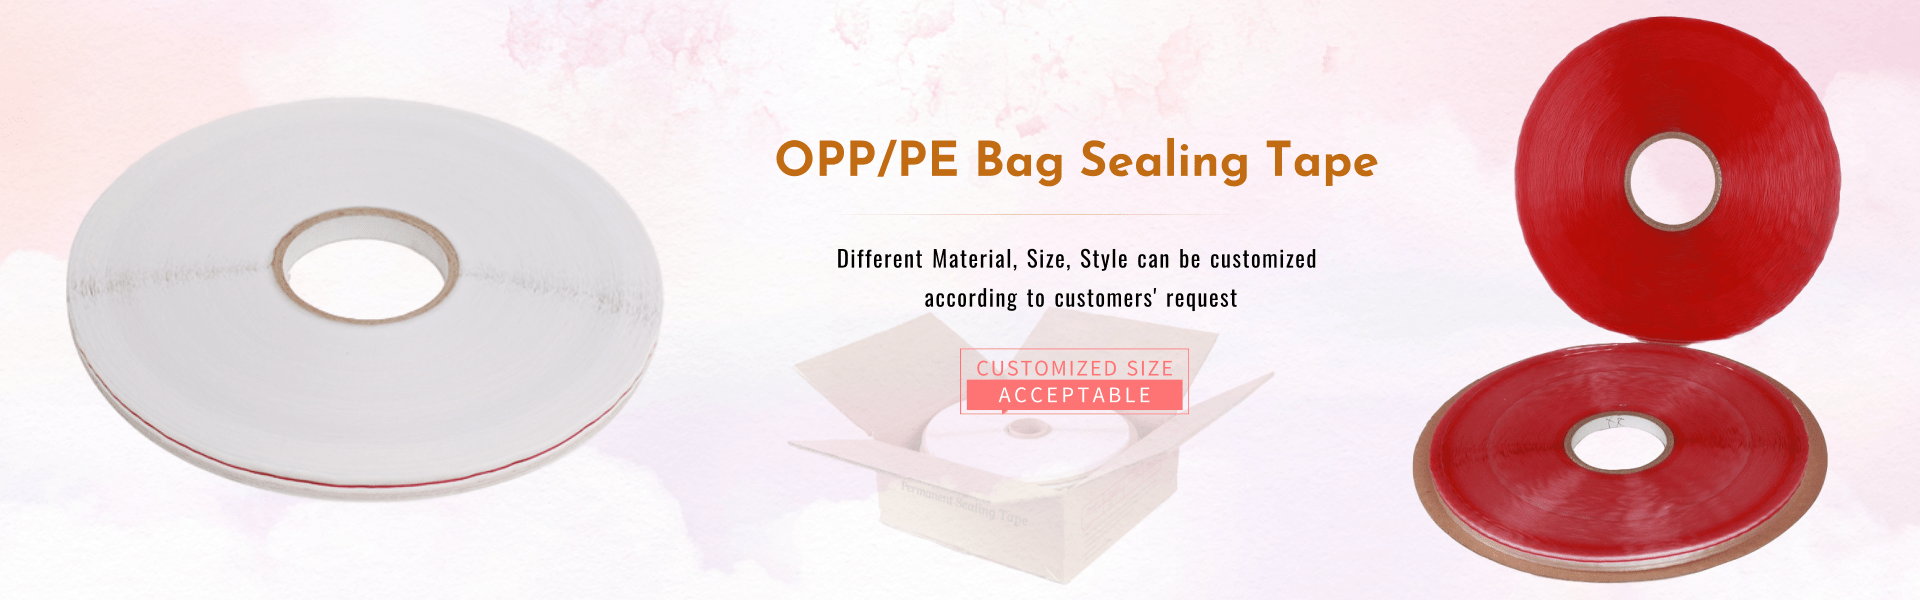 OPP Bag Sealing Tape